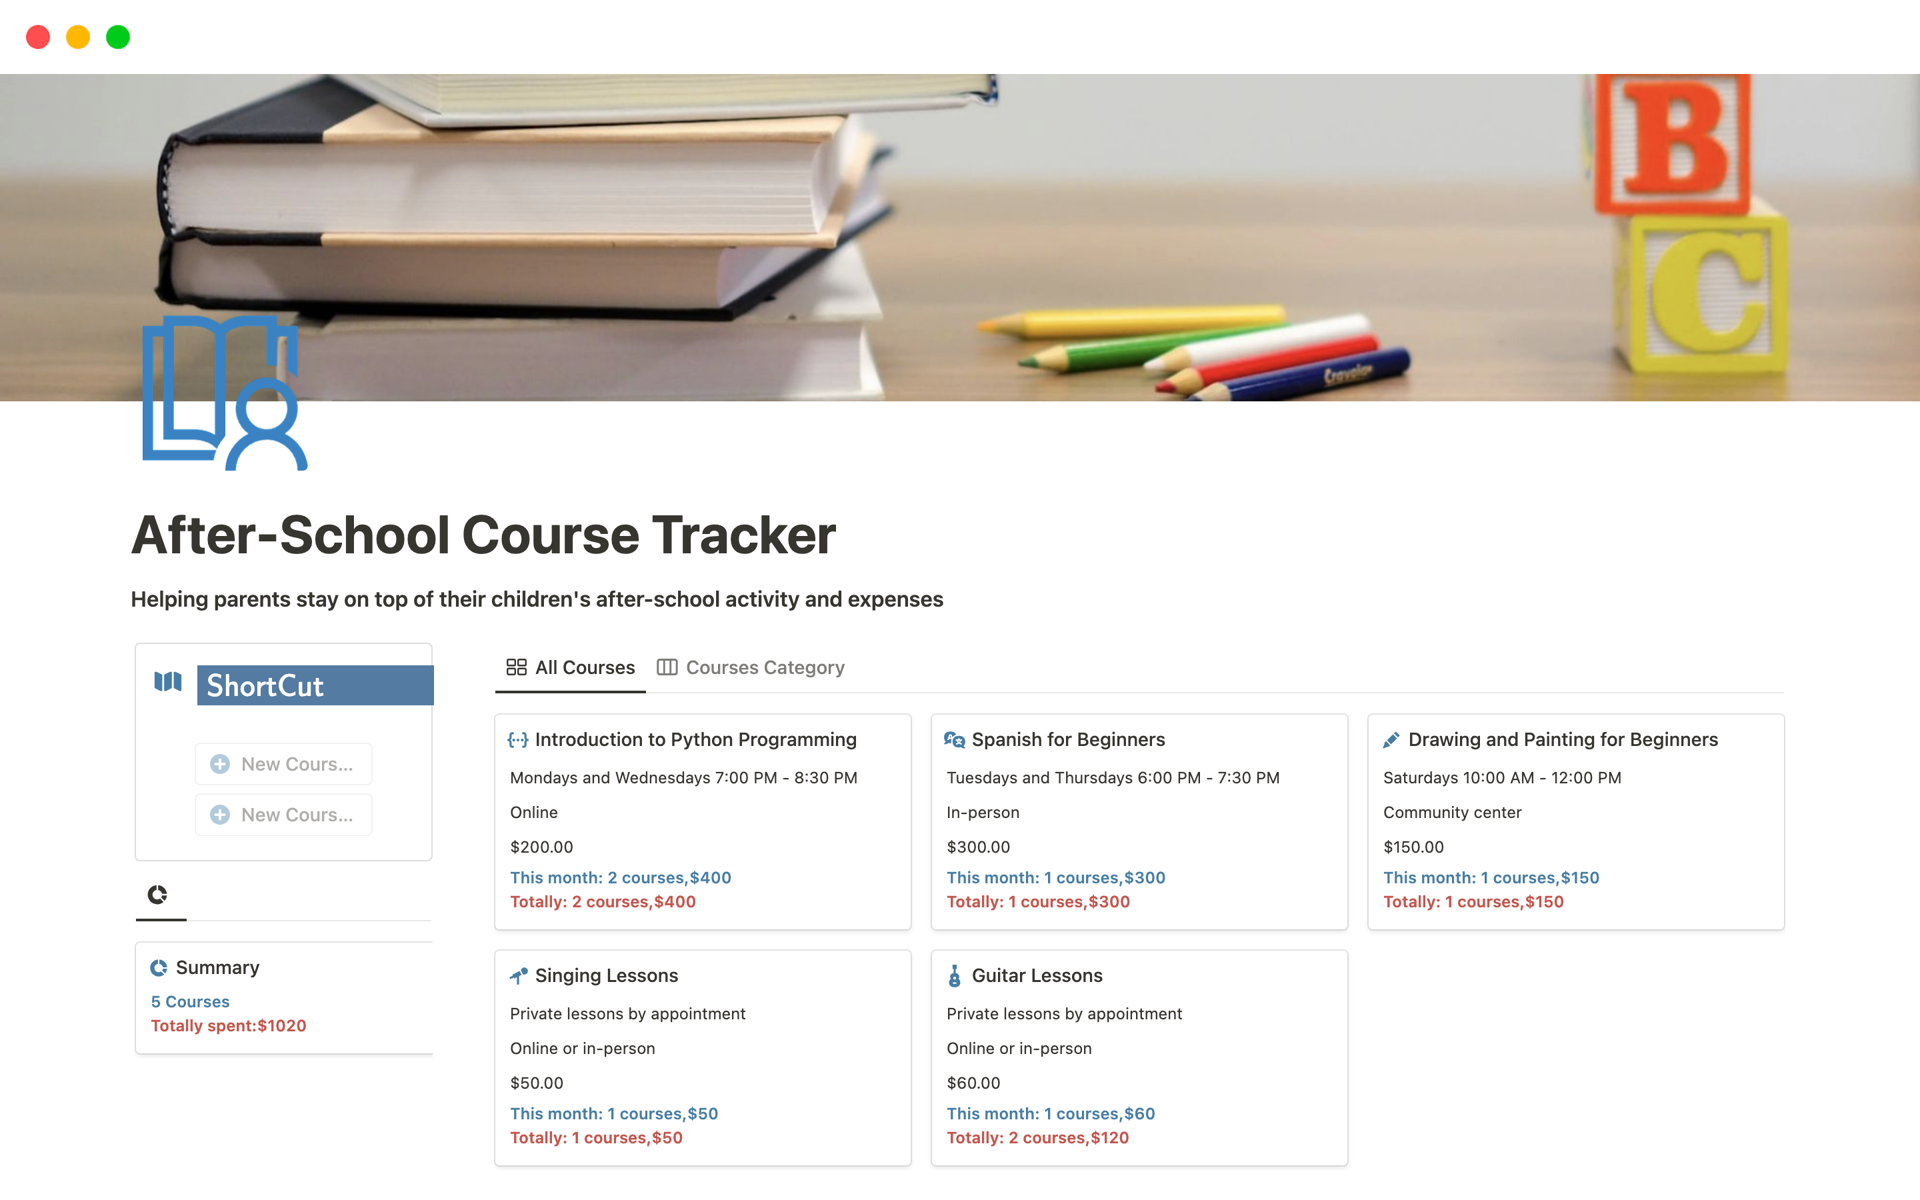 Vista previa de una plantilla para After-School Course Tracker